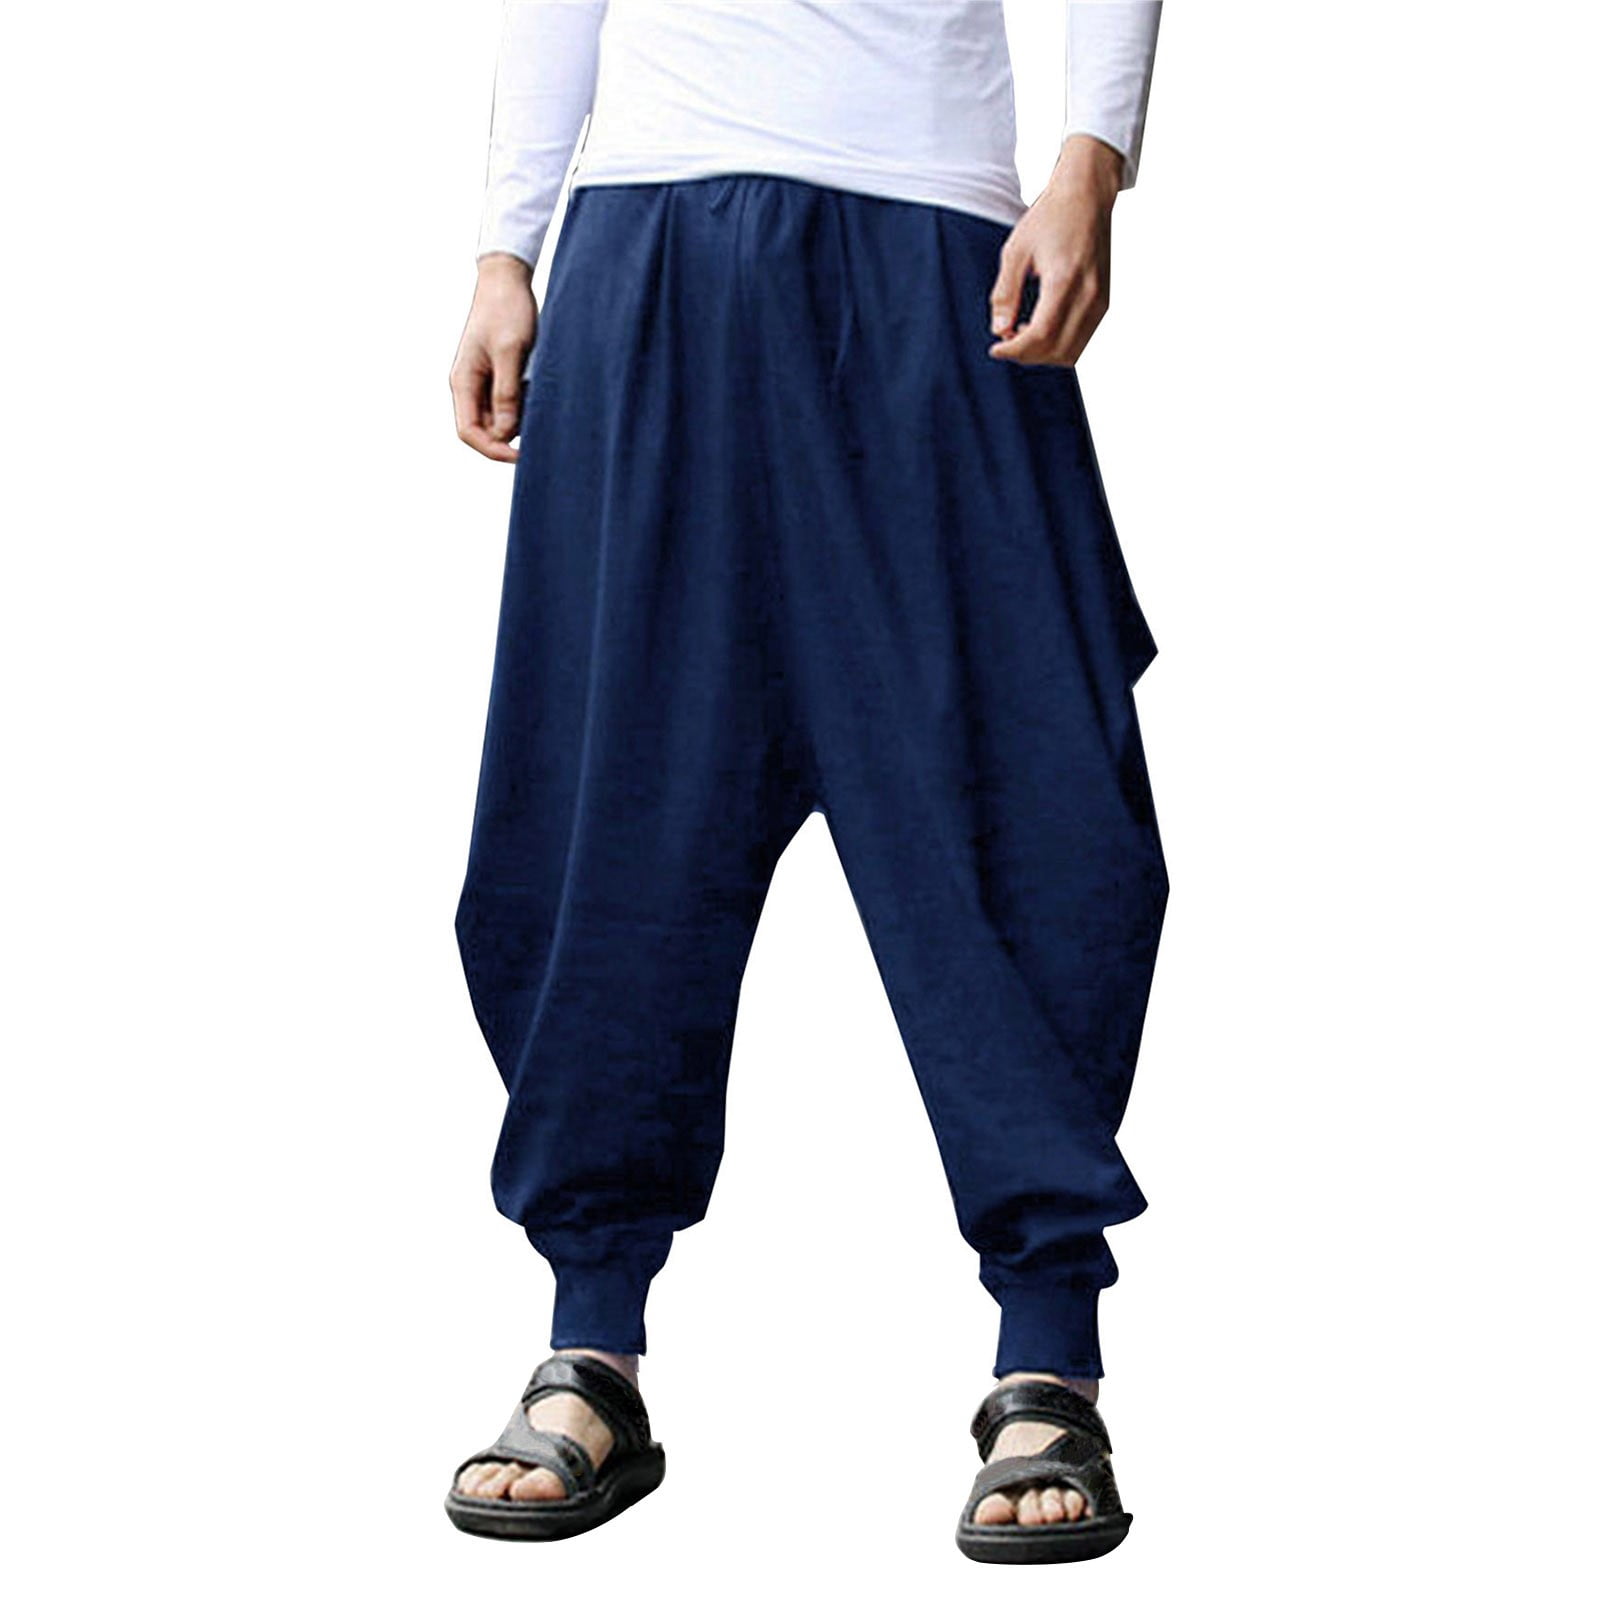 Men's Solid Color Cotton Linen Harem Pants Loose Wide Leg Elastic Waist  Lace-up Pants Casual Beach Yoga Trousers 